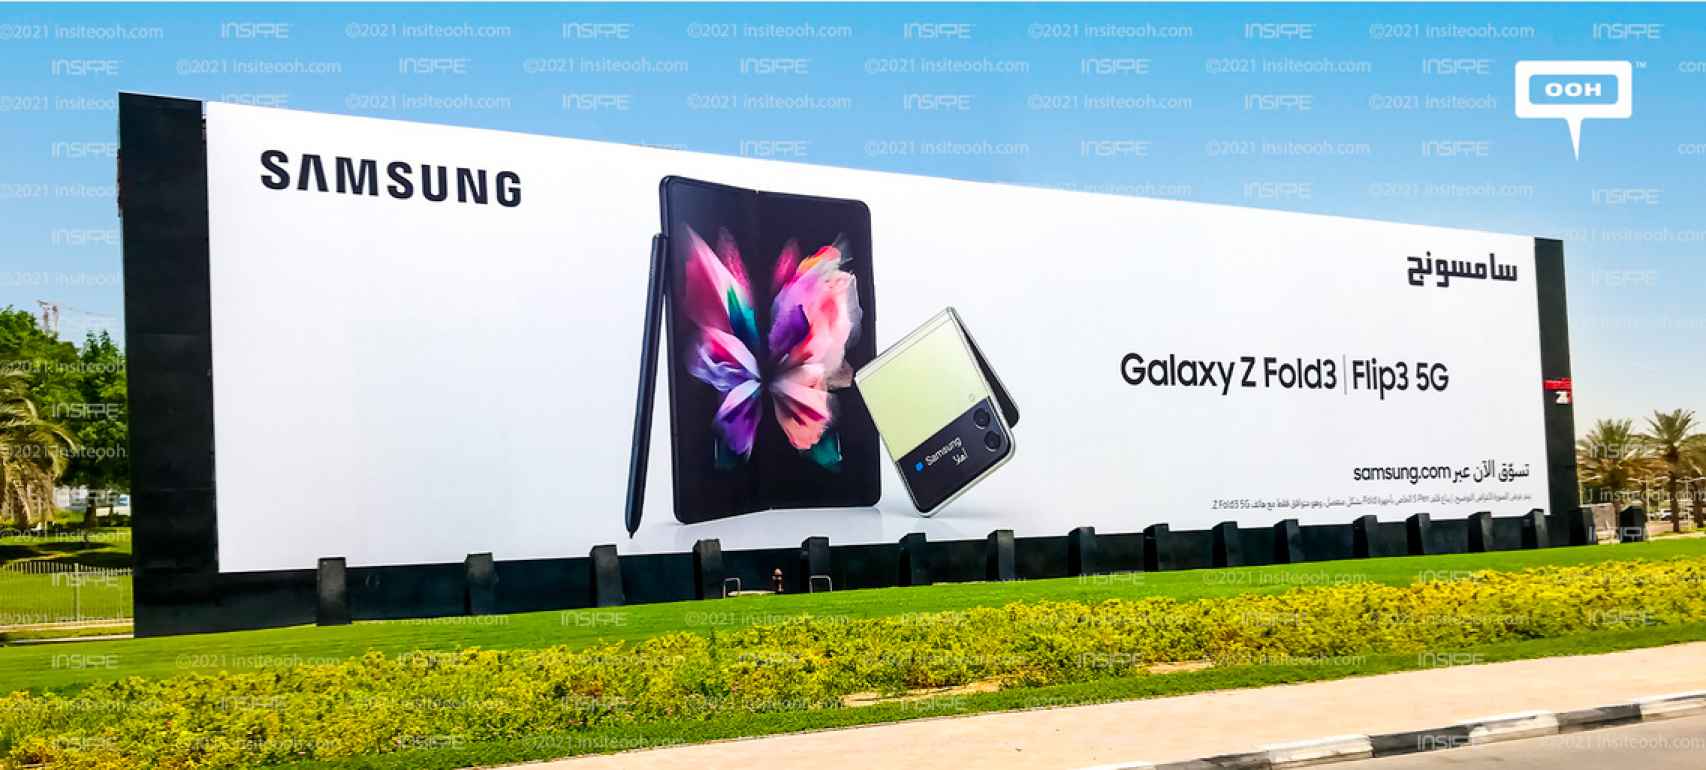 Valla publicitaria de Samsung en Dubai